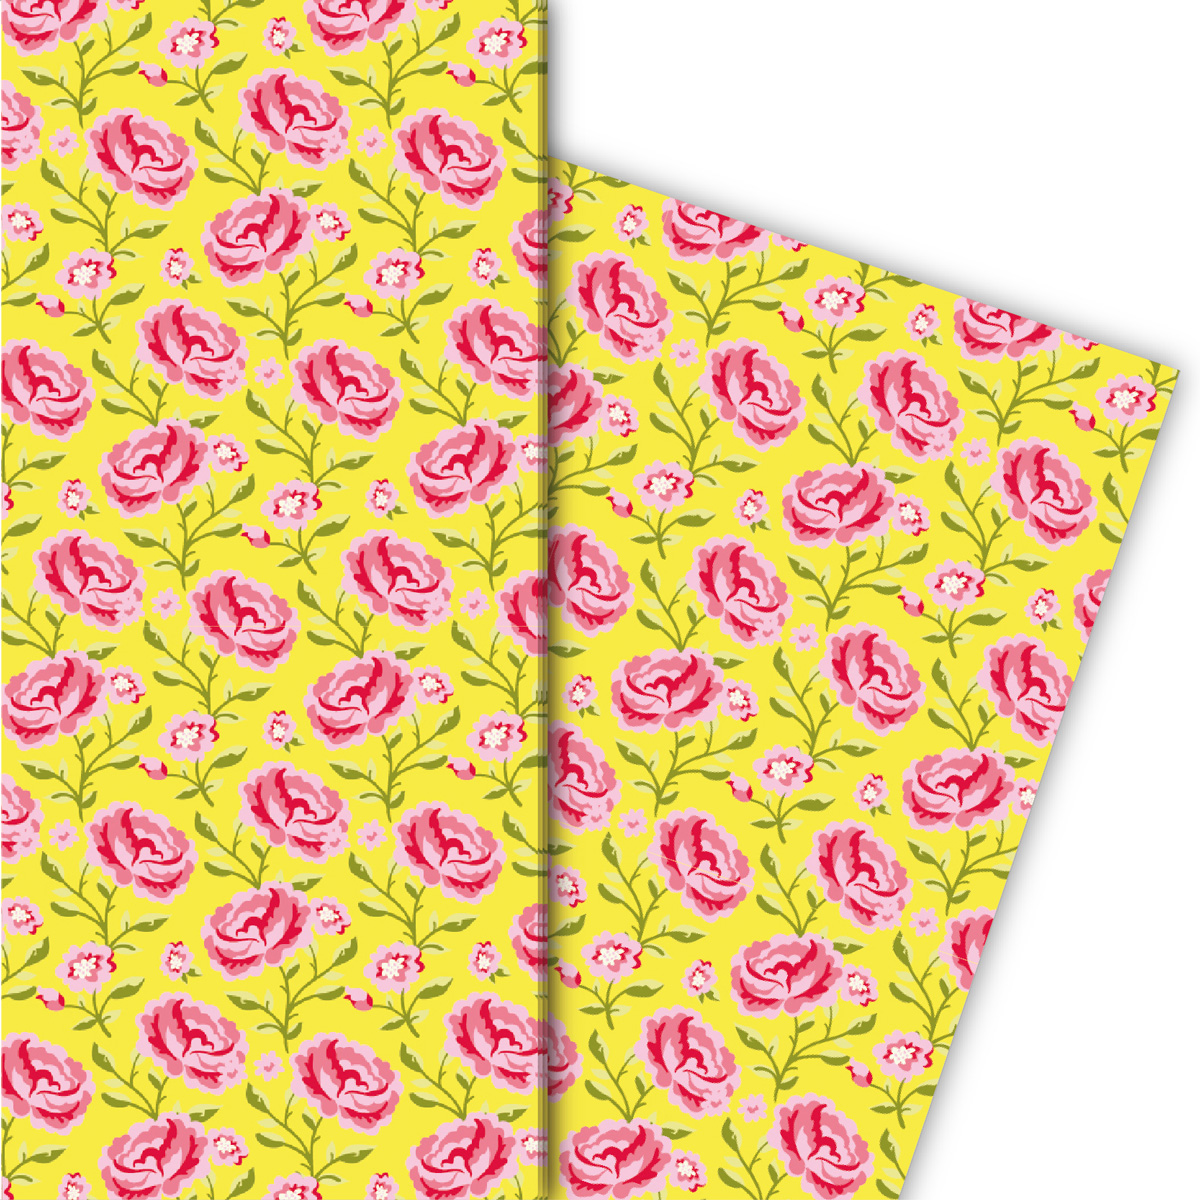 Kartenkaufrausch: Klassisches shabby chic Geschenkpapier aus unserer florale Papeterie in gelb